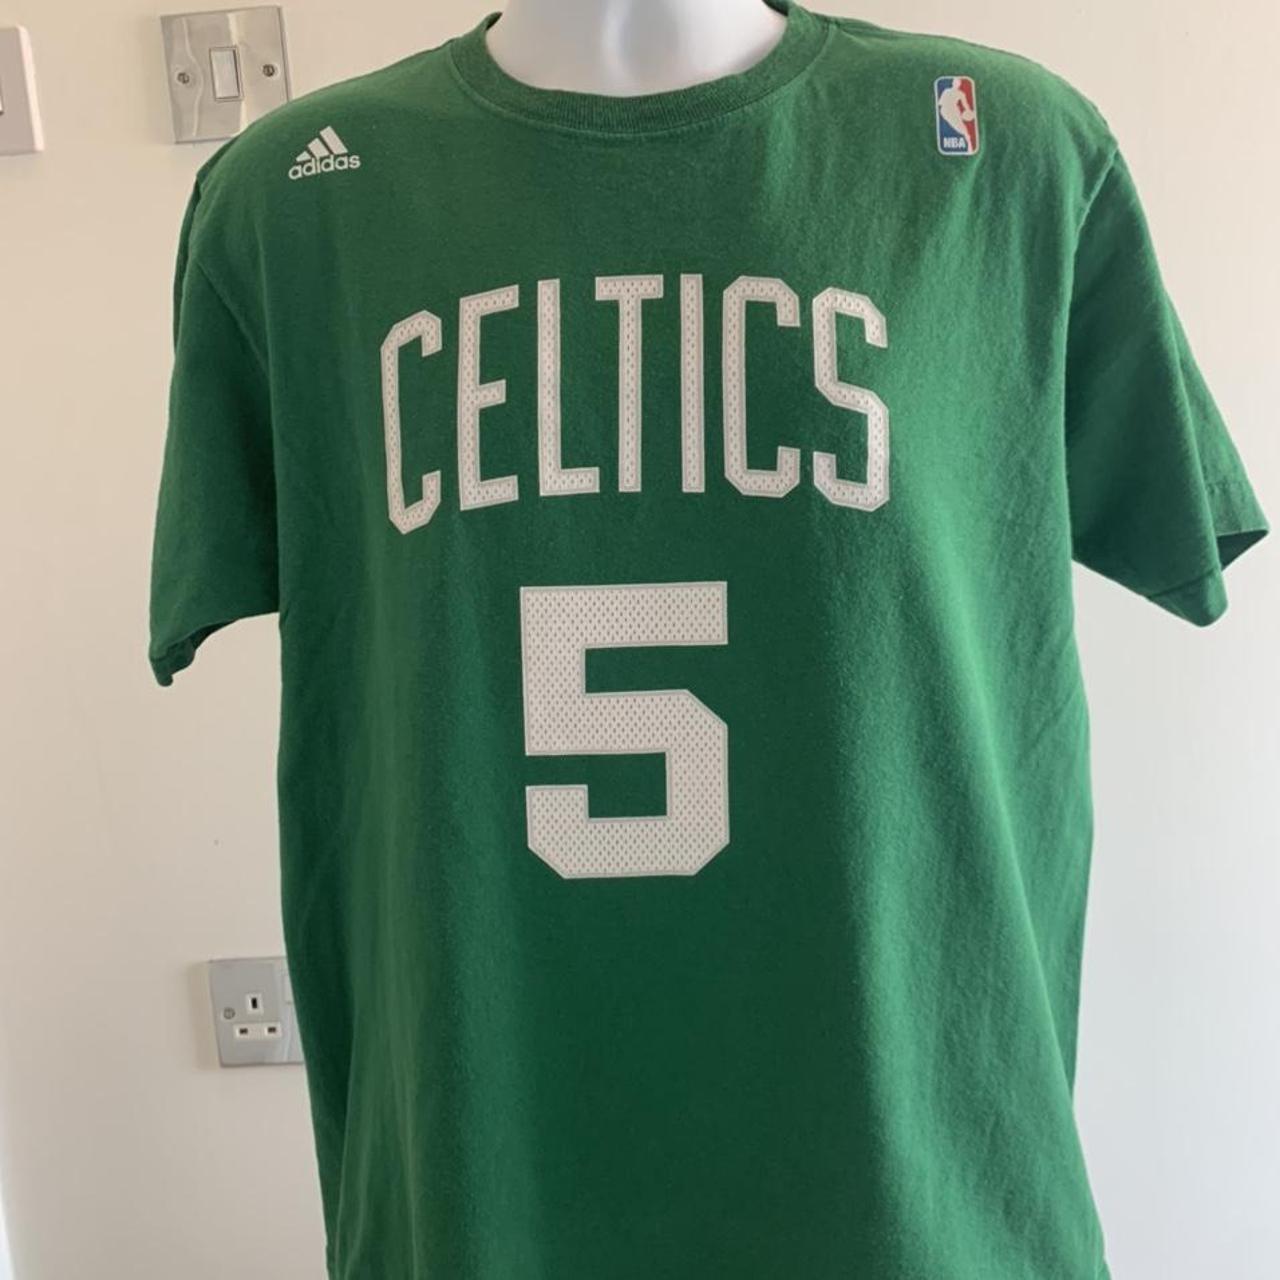 boston celtic t shirt